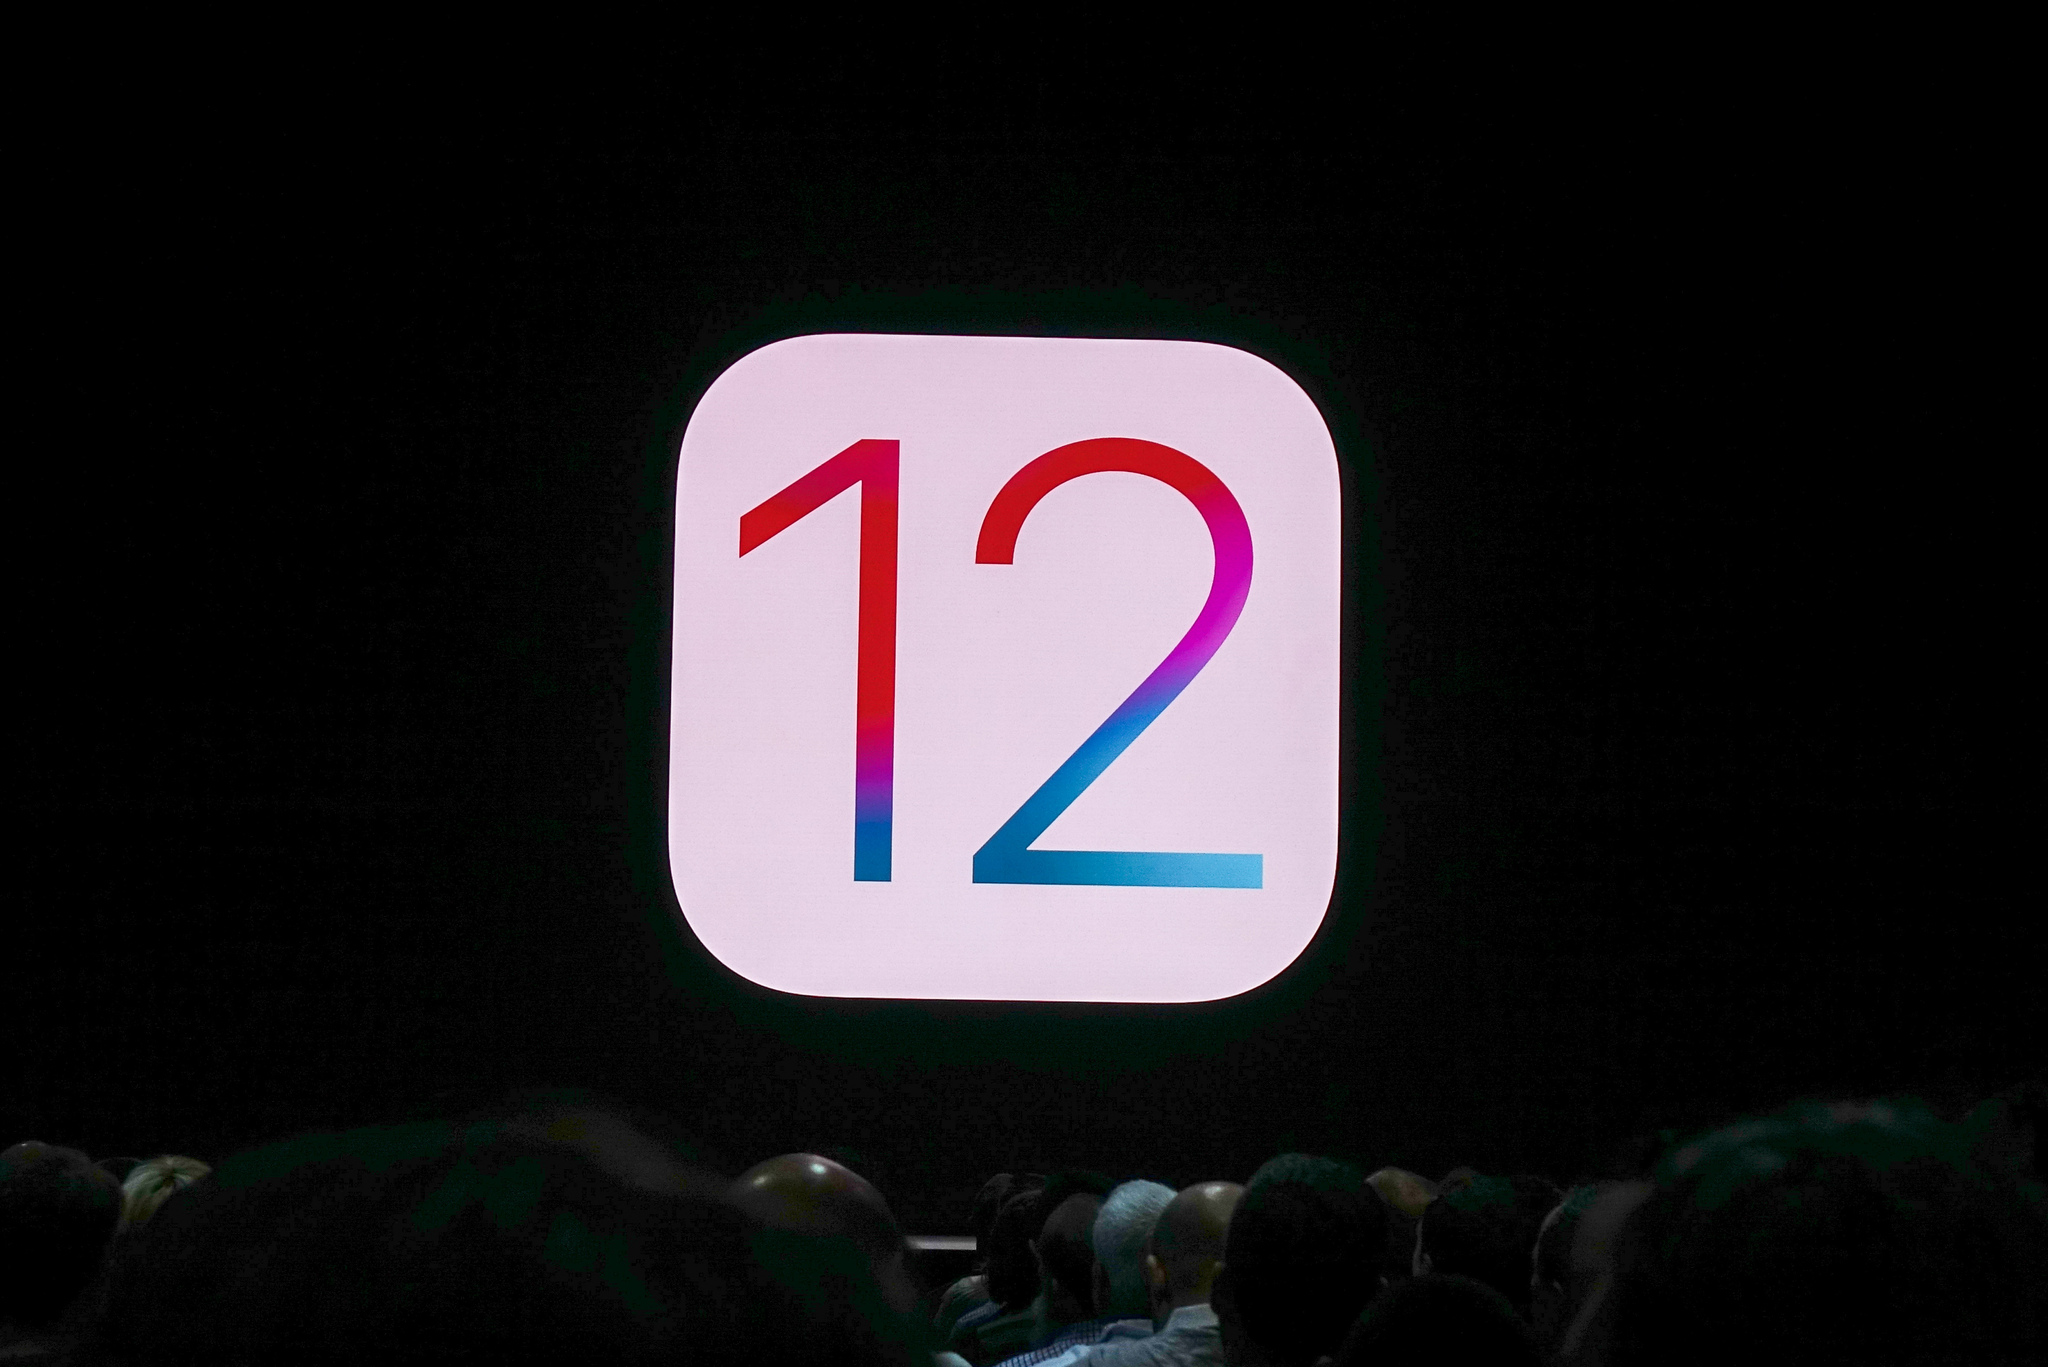 【写真】iPhone用OS次バージョンはiOS12